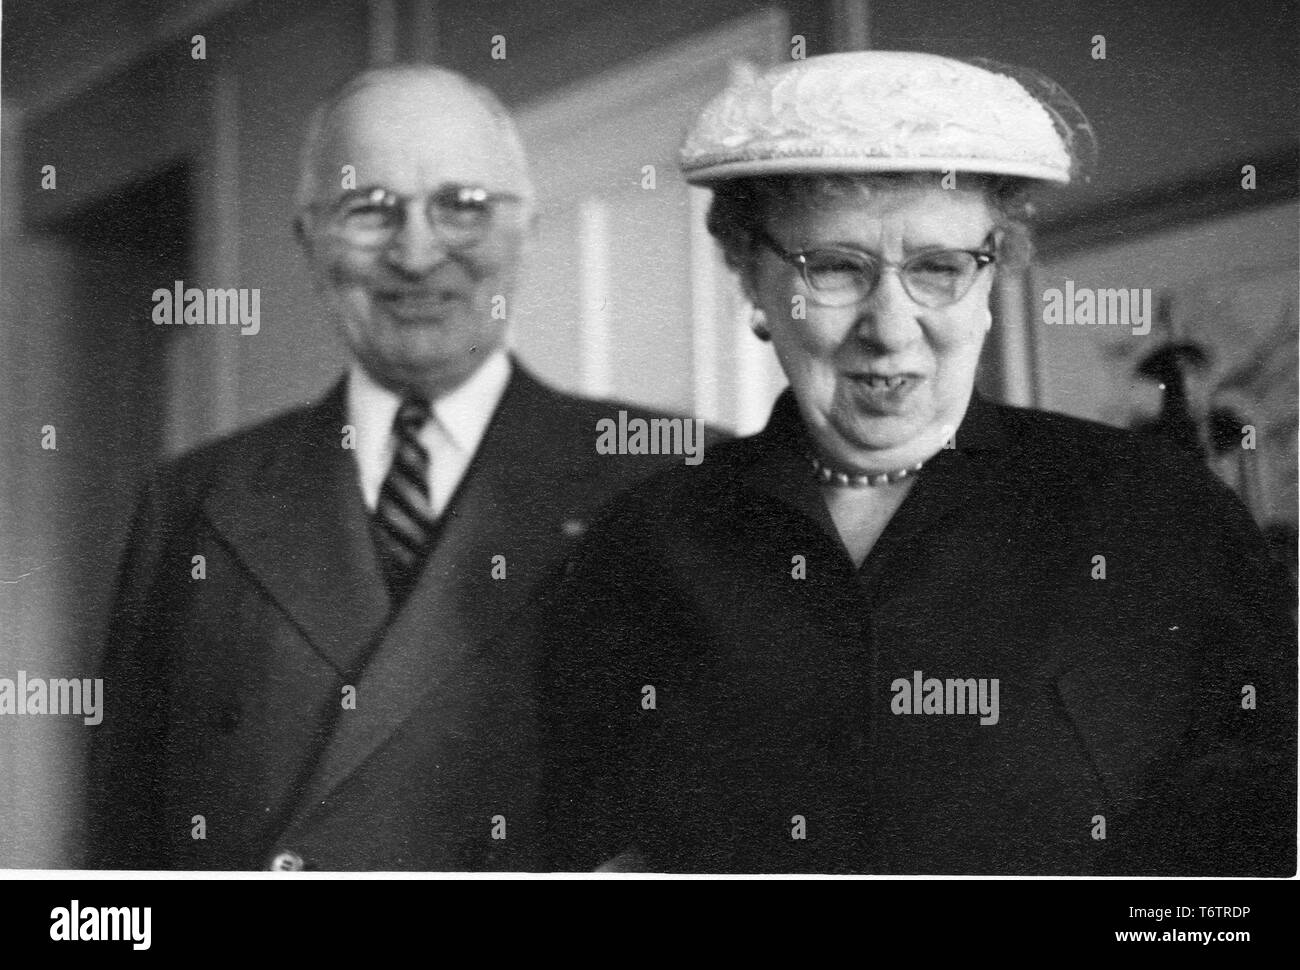 Il presidente americano Harry Truman e la First Lady Bess Truman, dal torace fino, rivolta verso la telecamera e sorridente, 1960. Immagine cortesia archivi nazionali. () Foto Stock